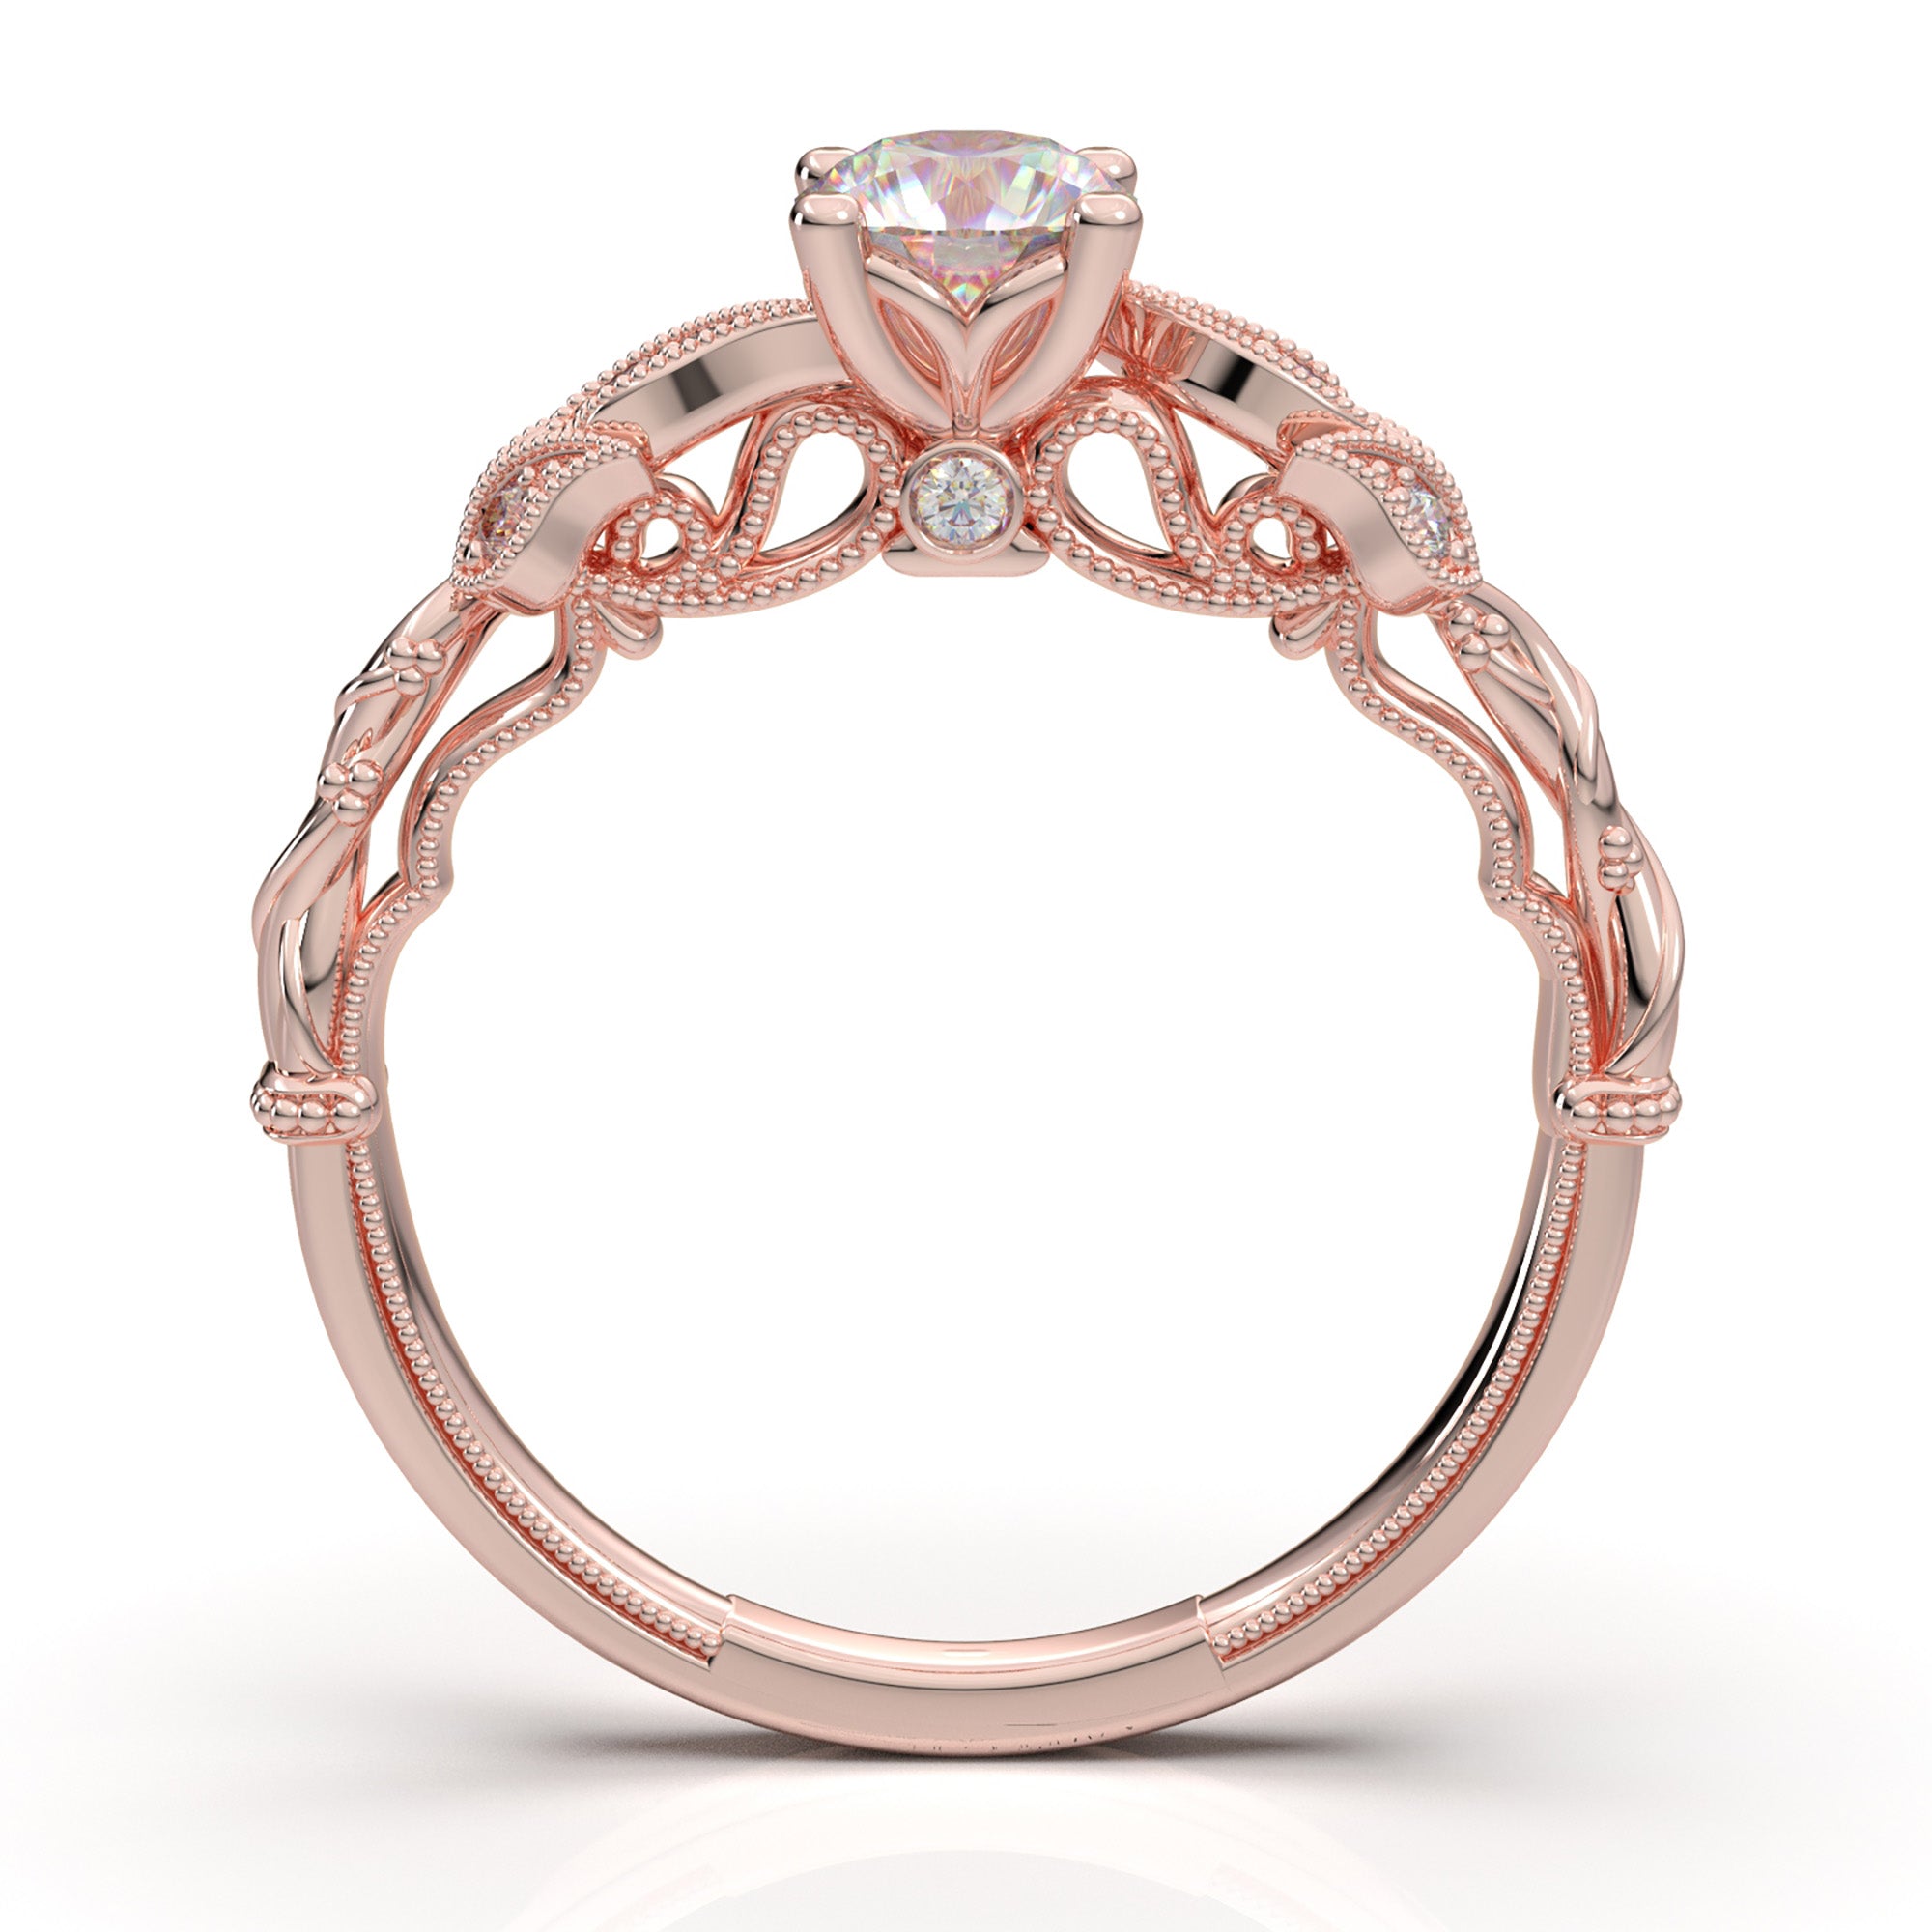 Buy Dainty Rose Gold and Diamond Finger Ring Online | ORRA